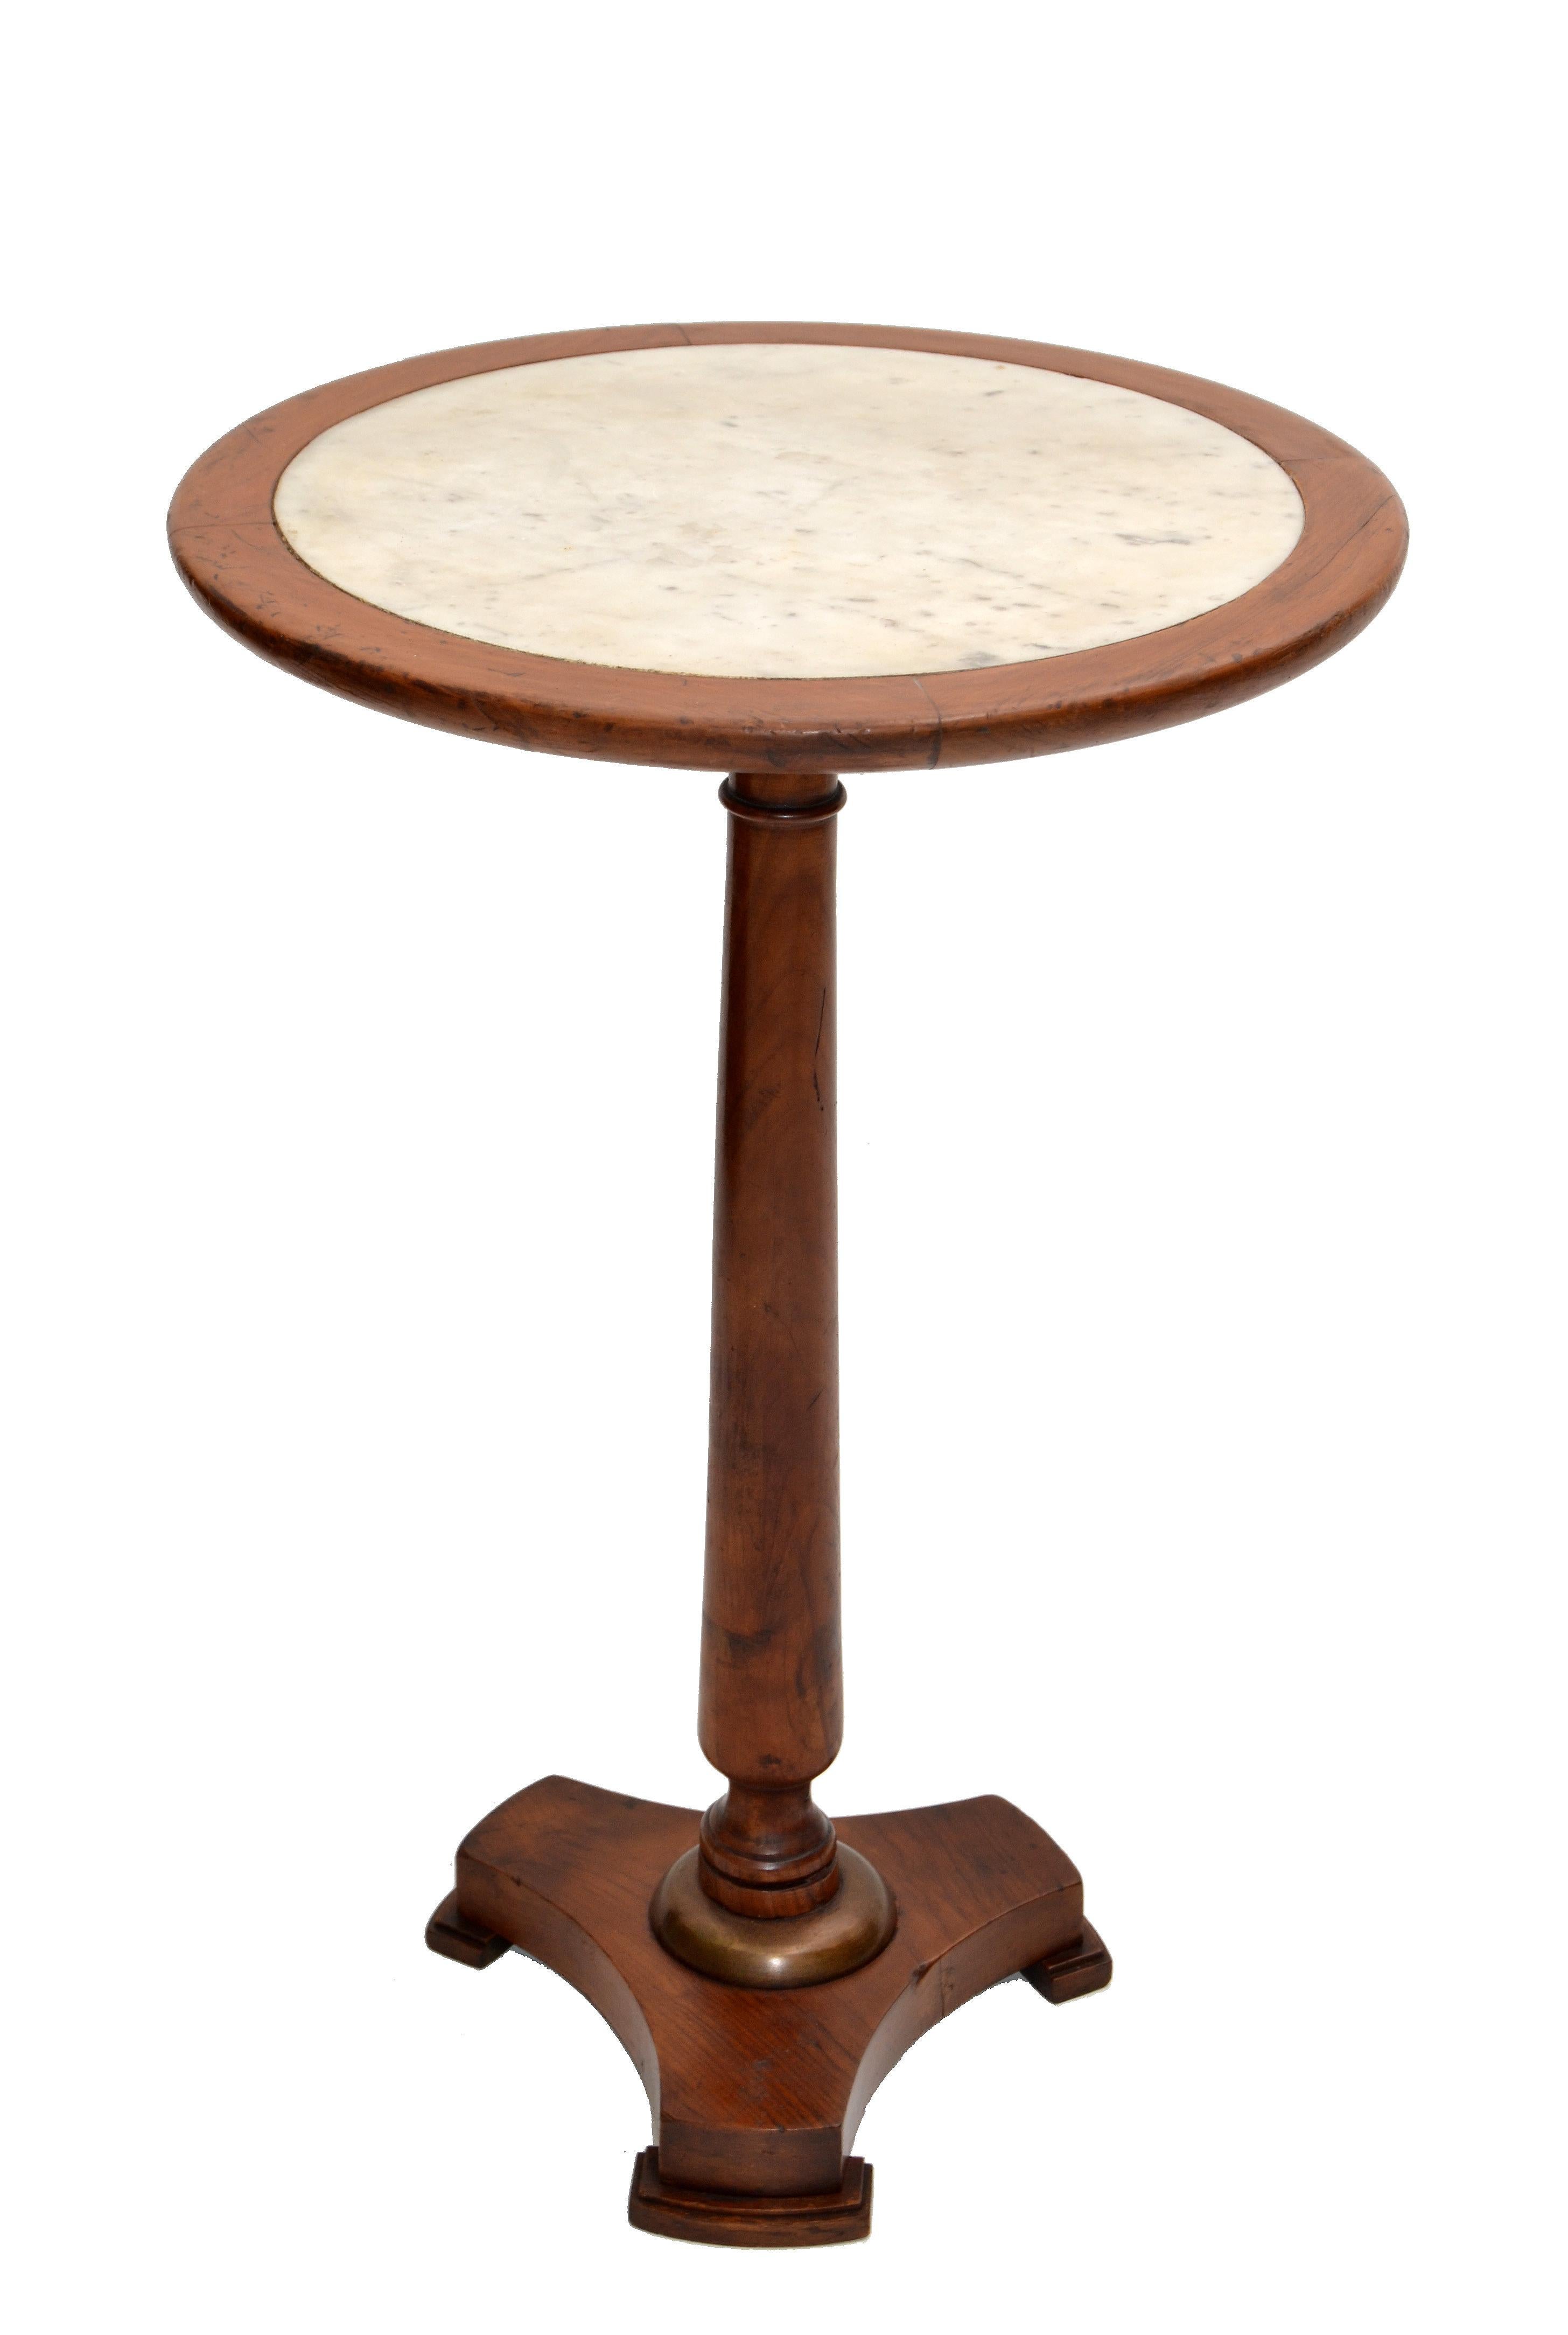 Nous proposons une table d'appoint de style Empire fabriquée en France.
Socle en bois de chêne tourné avec plateau en marbre datant de la fin des années 1950.
Estampillé en dessous, Made in France.